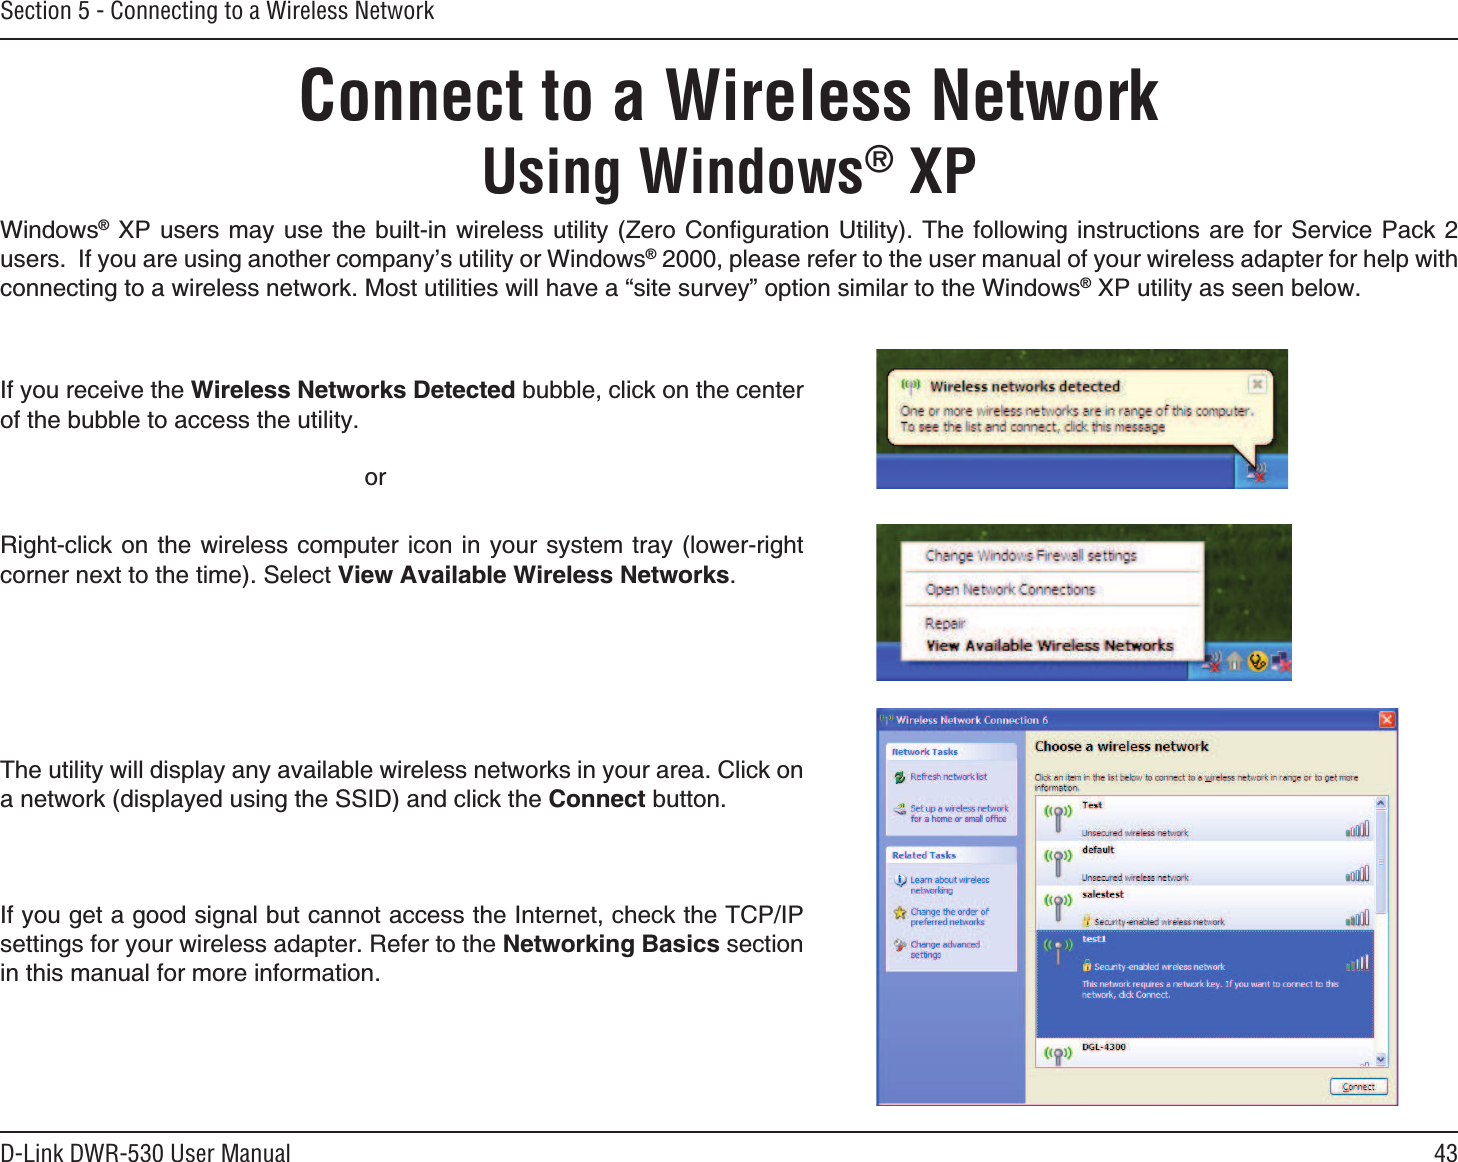 43D-Link DWR-530 User ManualSection 5 - Connecting to a Wireless NetworkConnect to a Wireless NetworkUsing Windows® XP9KPFQYUs:2 WUGTUOC[WUGVJGDWKNVKPYKTGNGUUWVKNKV[&lt;GTQ%QPſIWTCVKQP7VKNKV[6JGHQNNQYKPIKPUVTWEVKQPU CTGHQT5GTXKEG2CEMWUGTU+H[QWCTGWUKPICPQVJGTEQORCP[ŏUWVKNKV[QT9KPFQYUsRNGCUGTGHGTVQVJGWUGTOCPWCNQH[QWTYKTGNGUUCFCRVGTHQTJGNRYKVJEQPPGEVKPIVQCYKTGNGUUPGVYQTM/QUVWVKNKVKGUYKNNJCXGCőUKVGUWTXG[ŒQRVKQPUKOKNCTVQVJG9KPFQYUs:2WVKNKV[CUUGGPDGNQY4KIJVENKEMQPVJGYKTGNGUUEQORWVGTKEQPKP[QWTU[UVGOVTC[NQYGTTKIJVEQTPGTPGZVVQVJGVKOG5GNGEV8KGY#XCKNCDNG9KTGNGUU0GVYQTMU+H[QWTGEGKXGVJG9KTGNGUU0GVYQTMU&amp;GVGEVGFDWDDNGENKEMQPVJGEGPVGTQHVJGDWDDNGVQCEEGUUVJGWVKNKV[QT6JGWVKNKV[YKNNFKURNC[CP[CXCKNCDNGYKTGNGUUPGVYQTMUKP[QWTCTGC%NKEMQPCPGVYQTMFKURNC[GFWUKPIVJG55+&amp;CPFENKEMVJG%QPPGEVDWVVQP+H[QWIGVCIQQFUKIPCNDWVECPPQVCEEGUUVJG+PVGTPGVEJGEMVJG6%2+2UGVVKPIUHQT[QWTYKTGNGUUCFCRVGT4GHGTVQVJG0GVYQTMKPI$CUKEUUGEVKQPKPVJKUOCPWCNHQTOQTGKPHQTOCVKQP